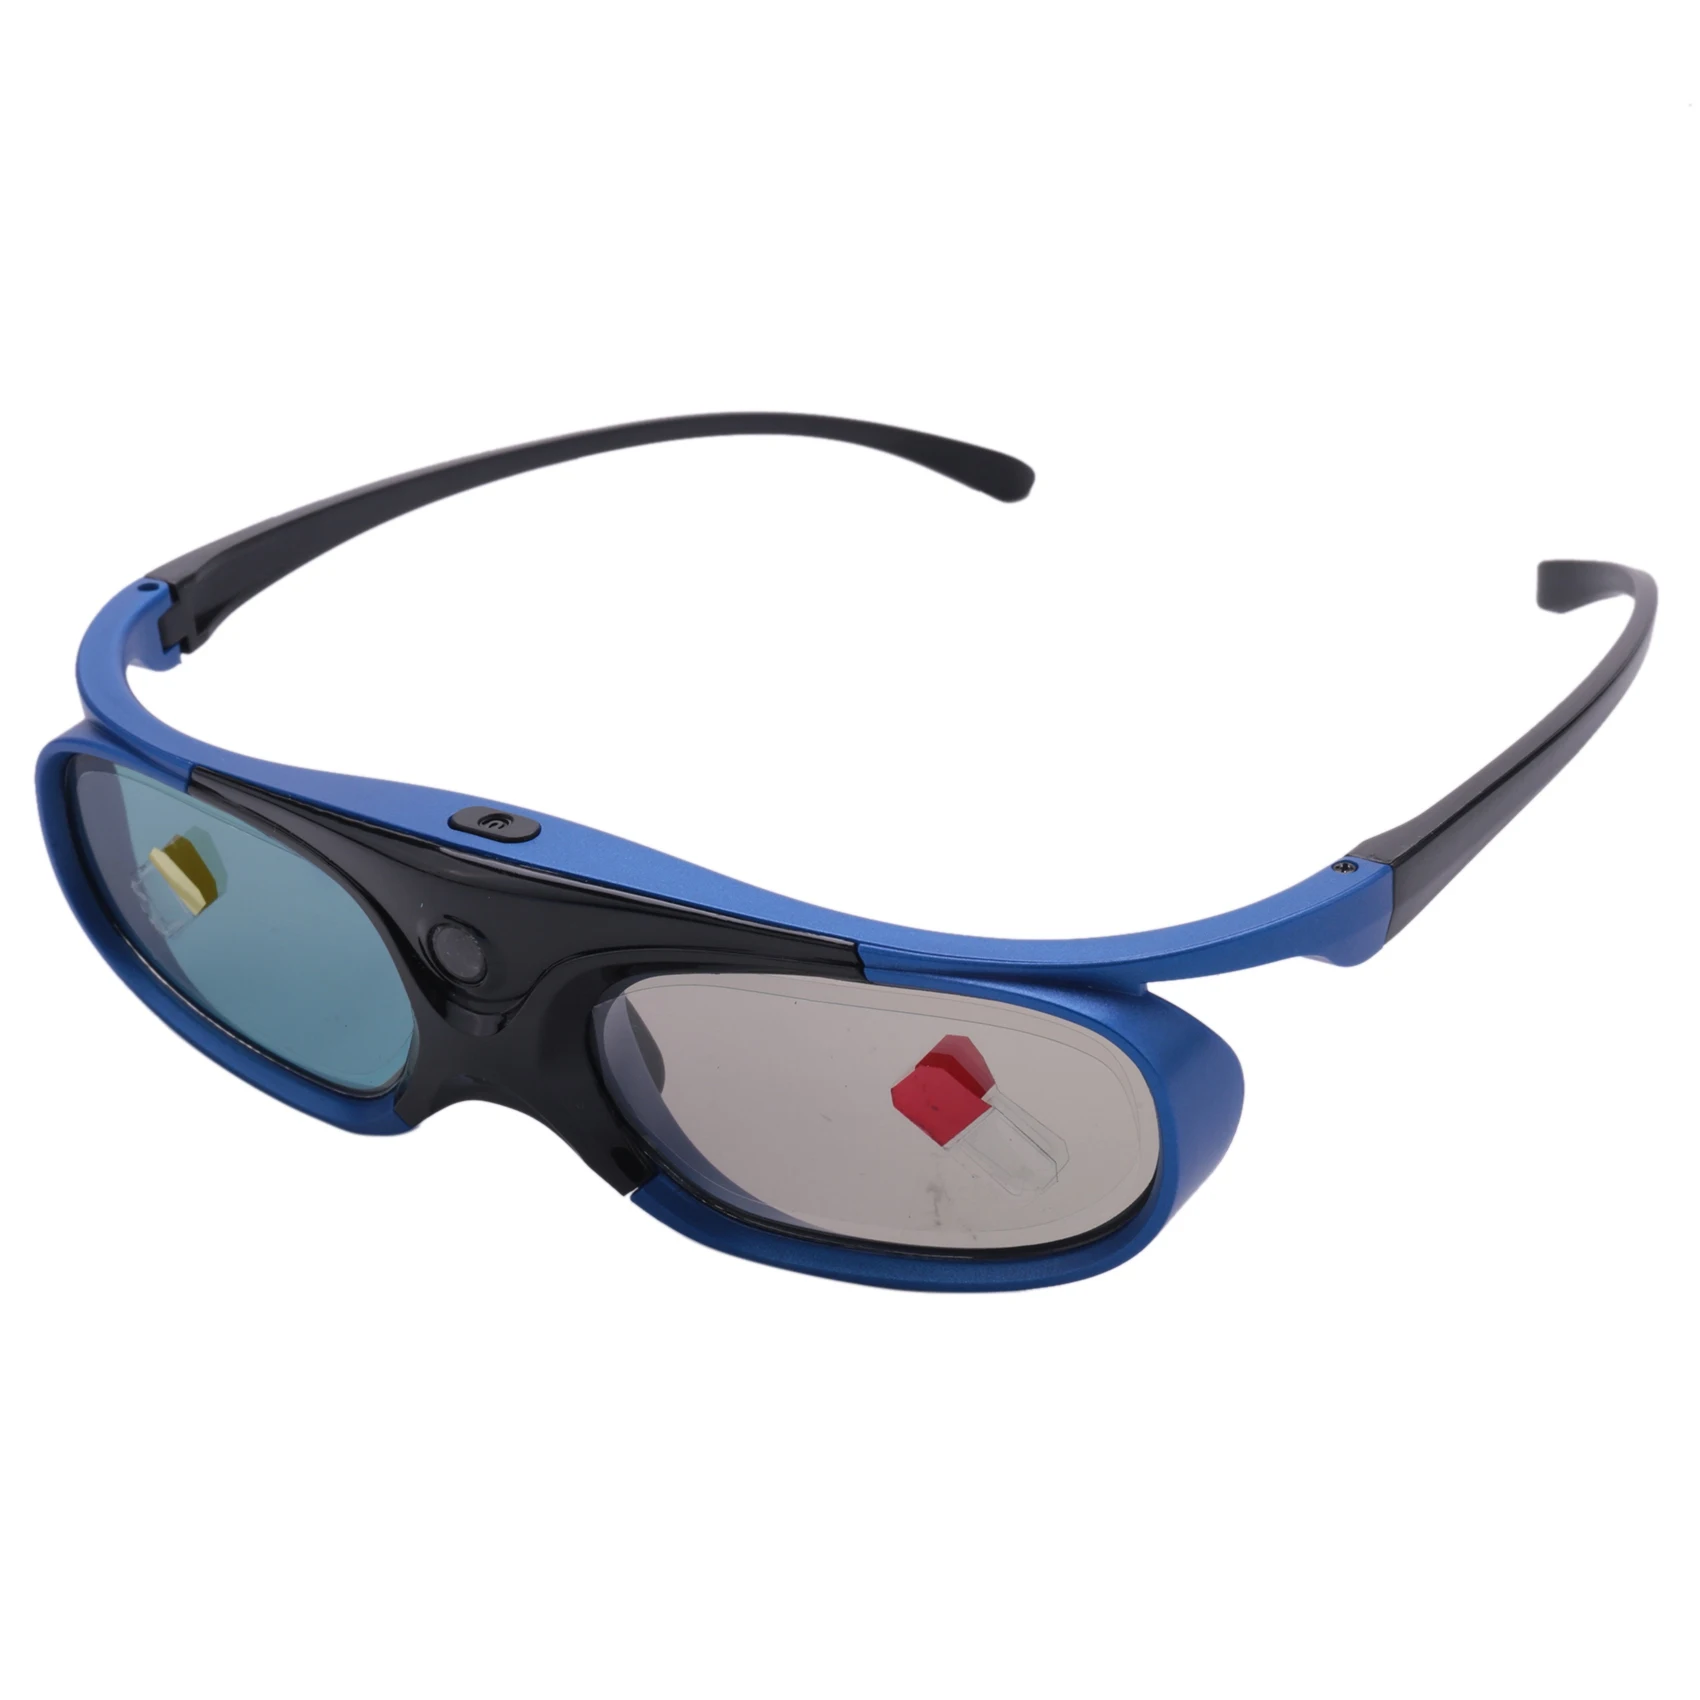 

Перезаряжаемые очки DLP Link 3D очки с активным затвором очки для Xgimi Z3/Z4/Z6/H1/H2 гайки G1/P2 BenQ Acer и DLP LINK проектор